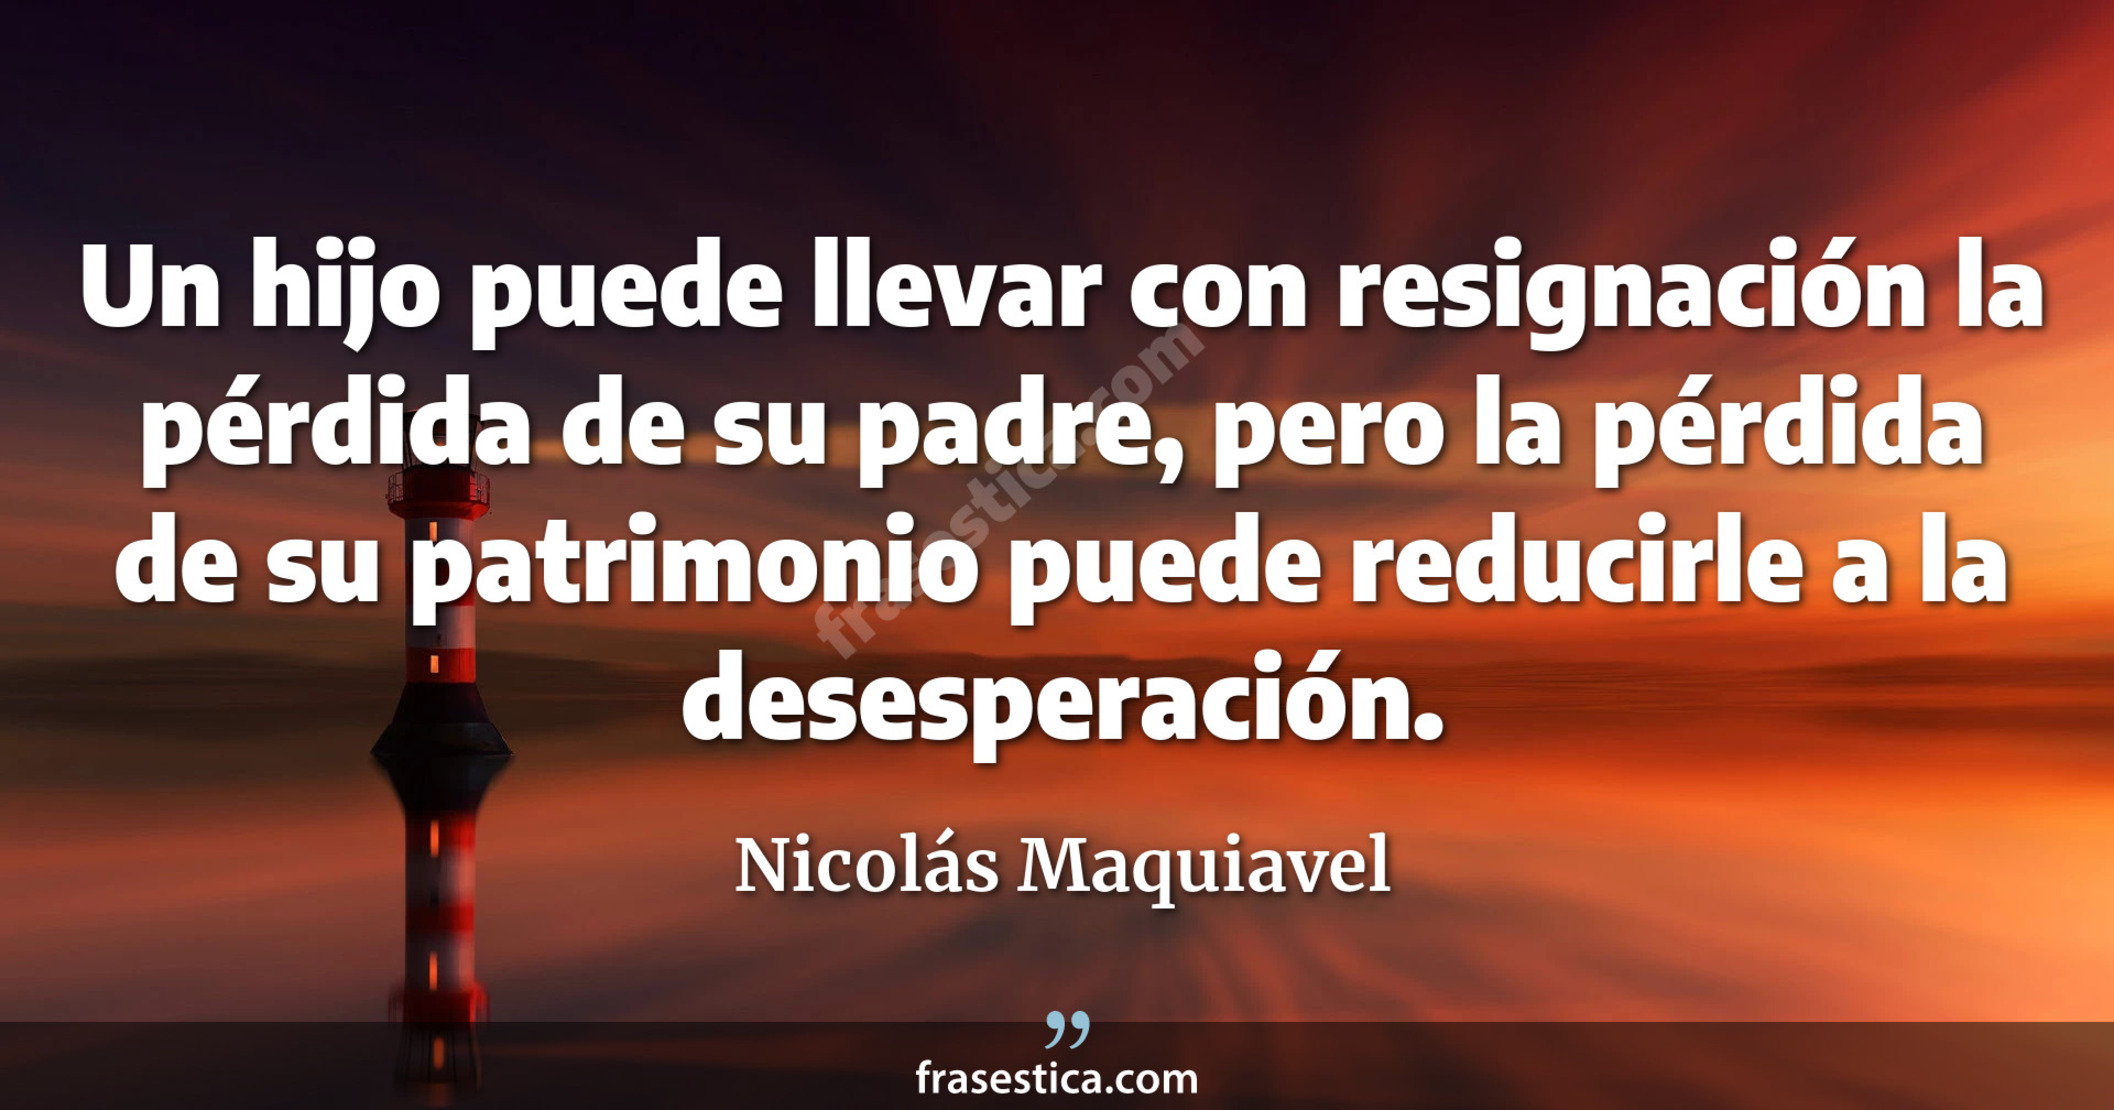 Un hijo puede llevar con resignación la pérdida de su padre, pero la pérdida de su patrimonio puede reducirle a la desesperación. - Nicolás Maquiavel